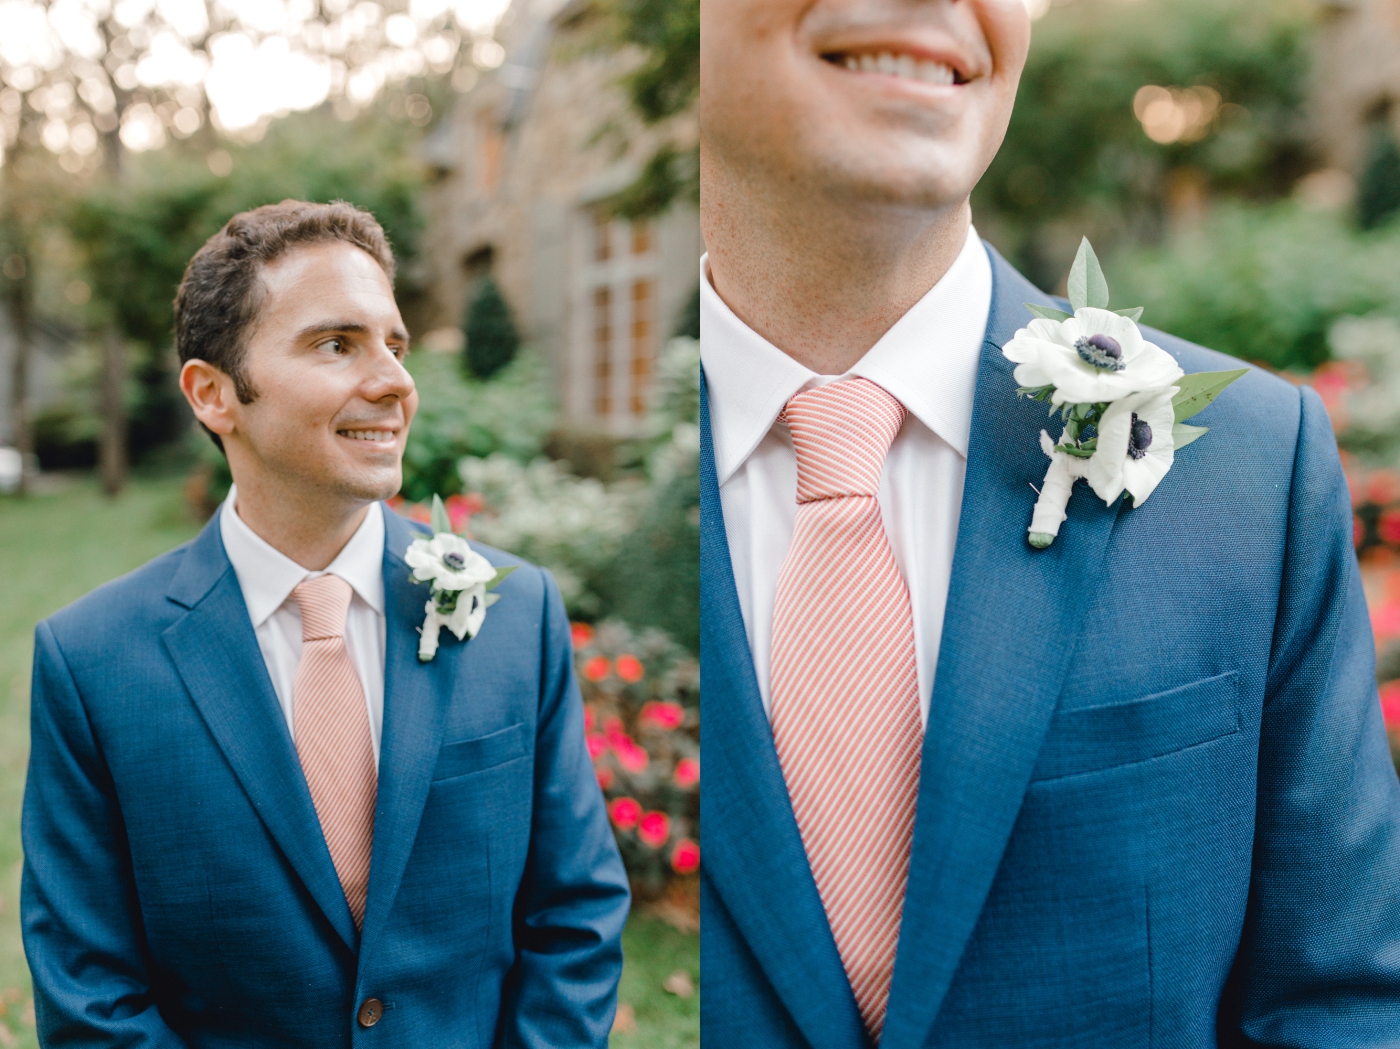 groom portraits in intimate backyard wedding